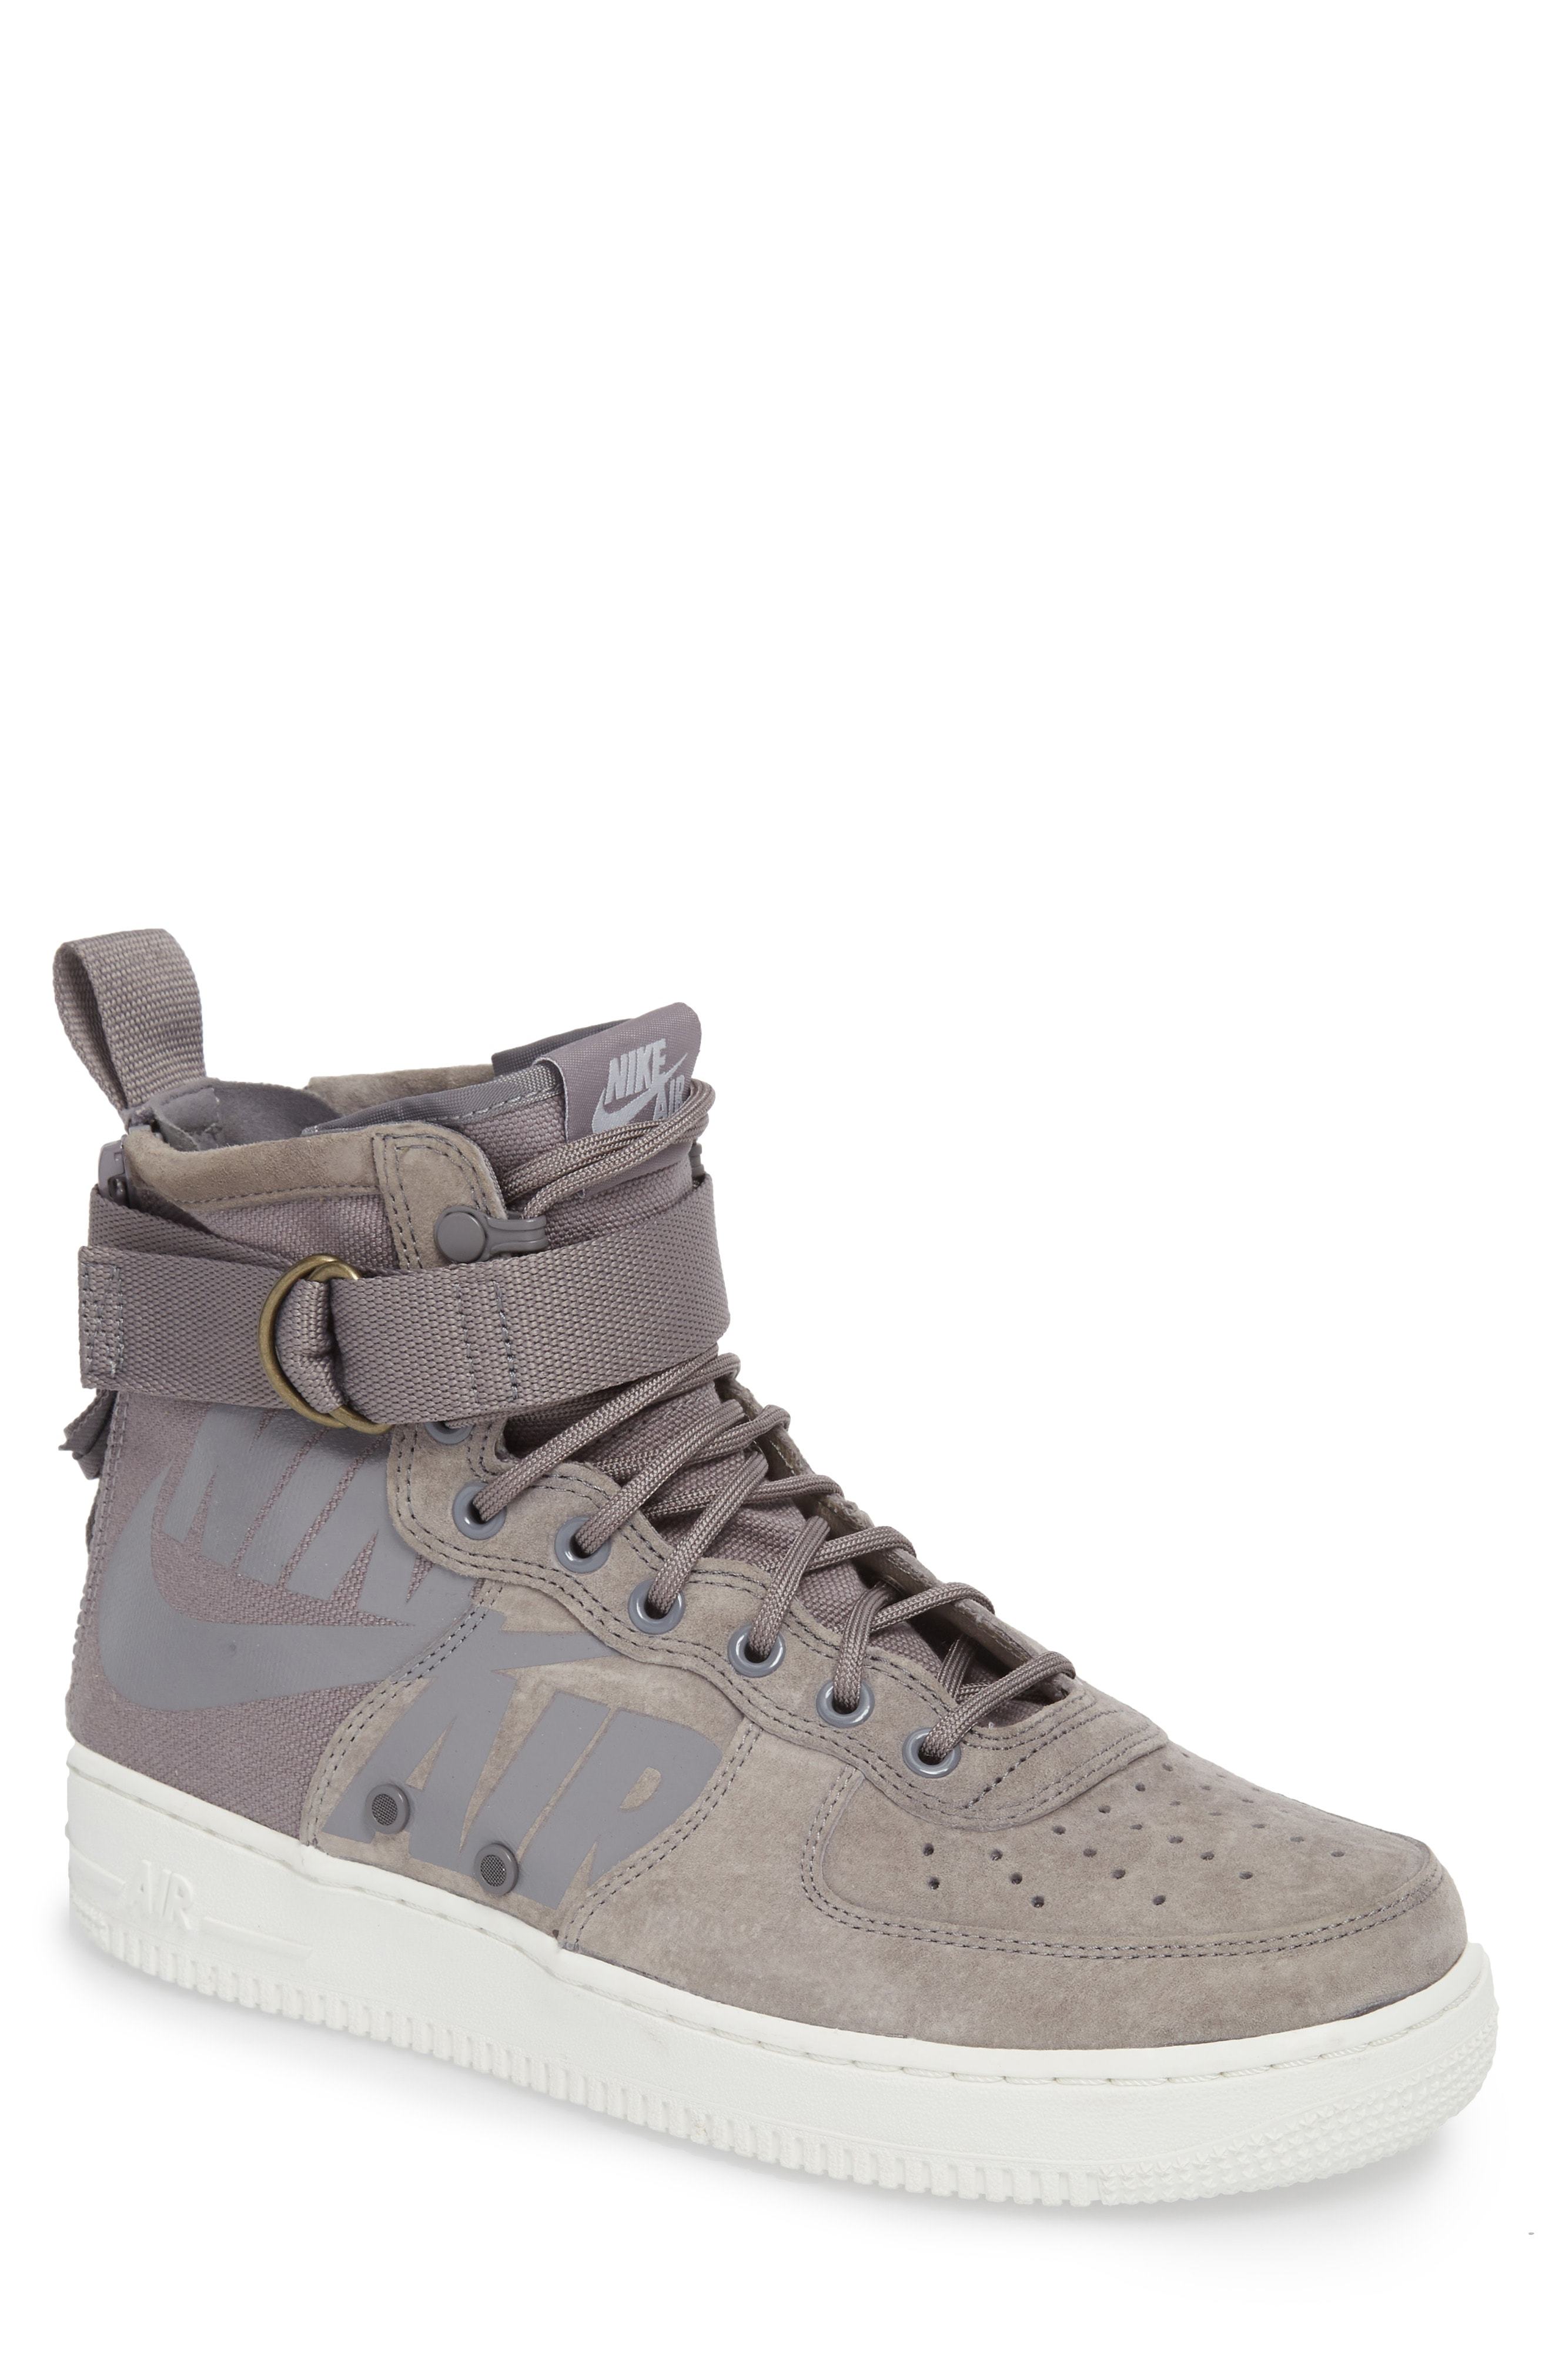 Nike Sf Air Force 1 Mid Sneaker, $79 